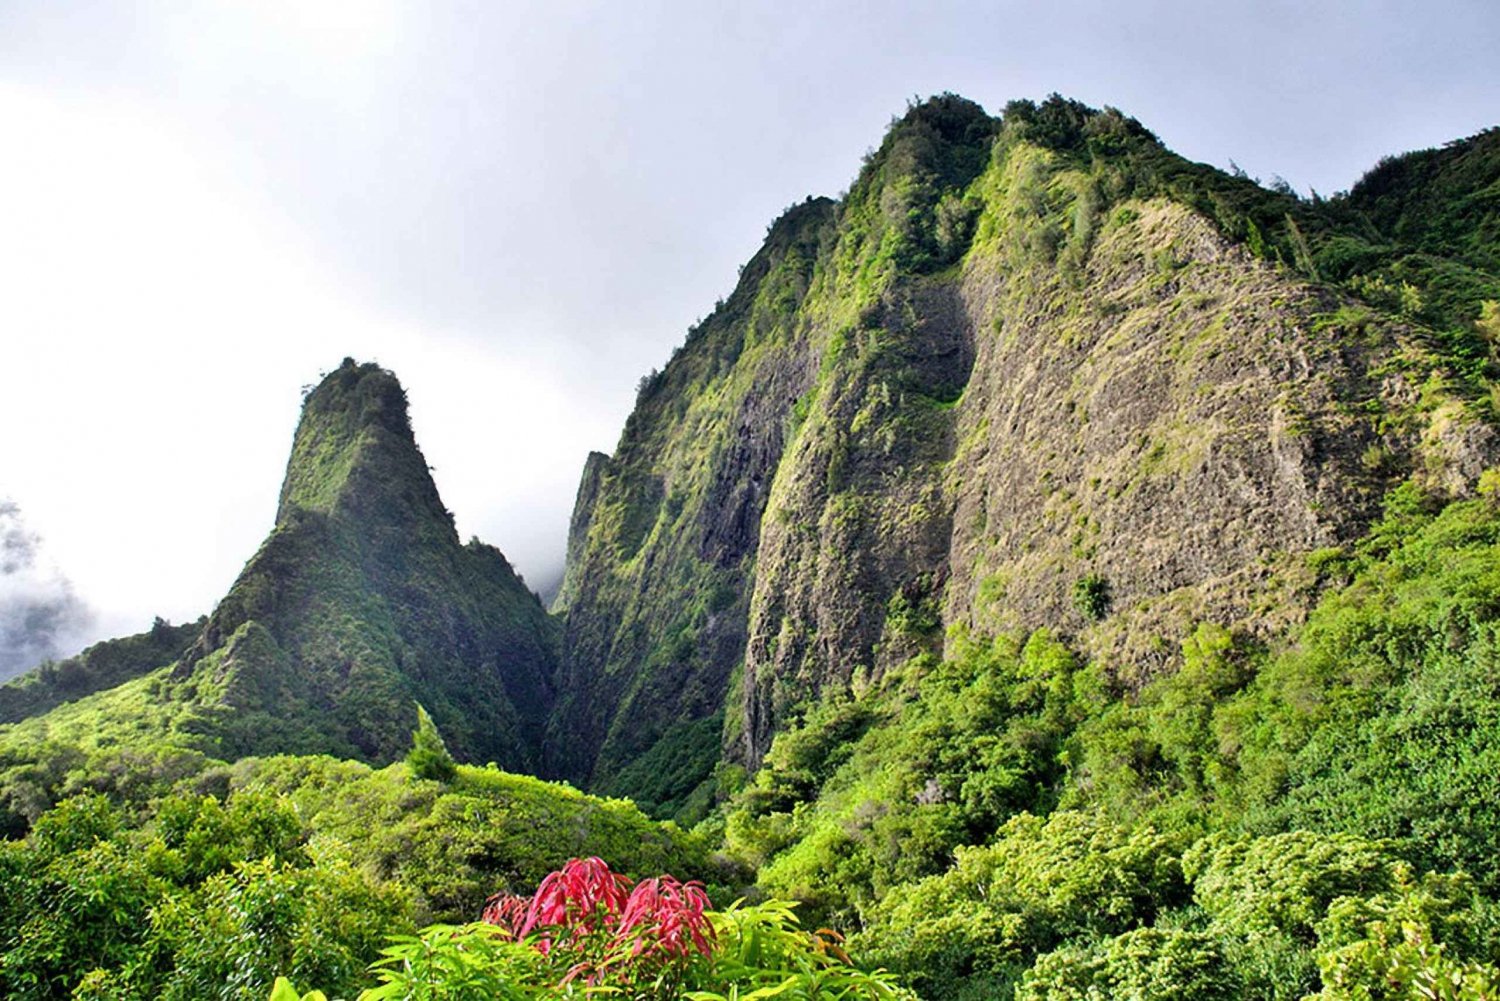 Maui: Haleakala and Ia'o Valley Tour